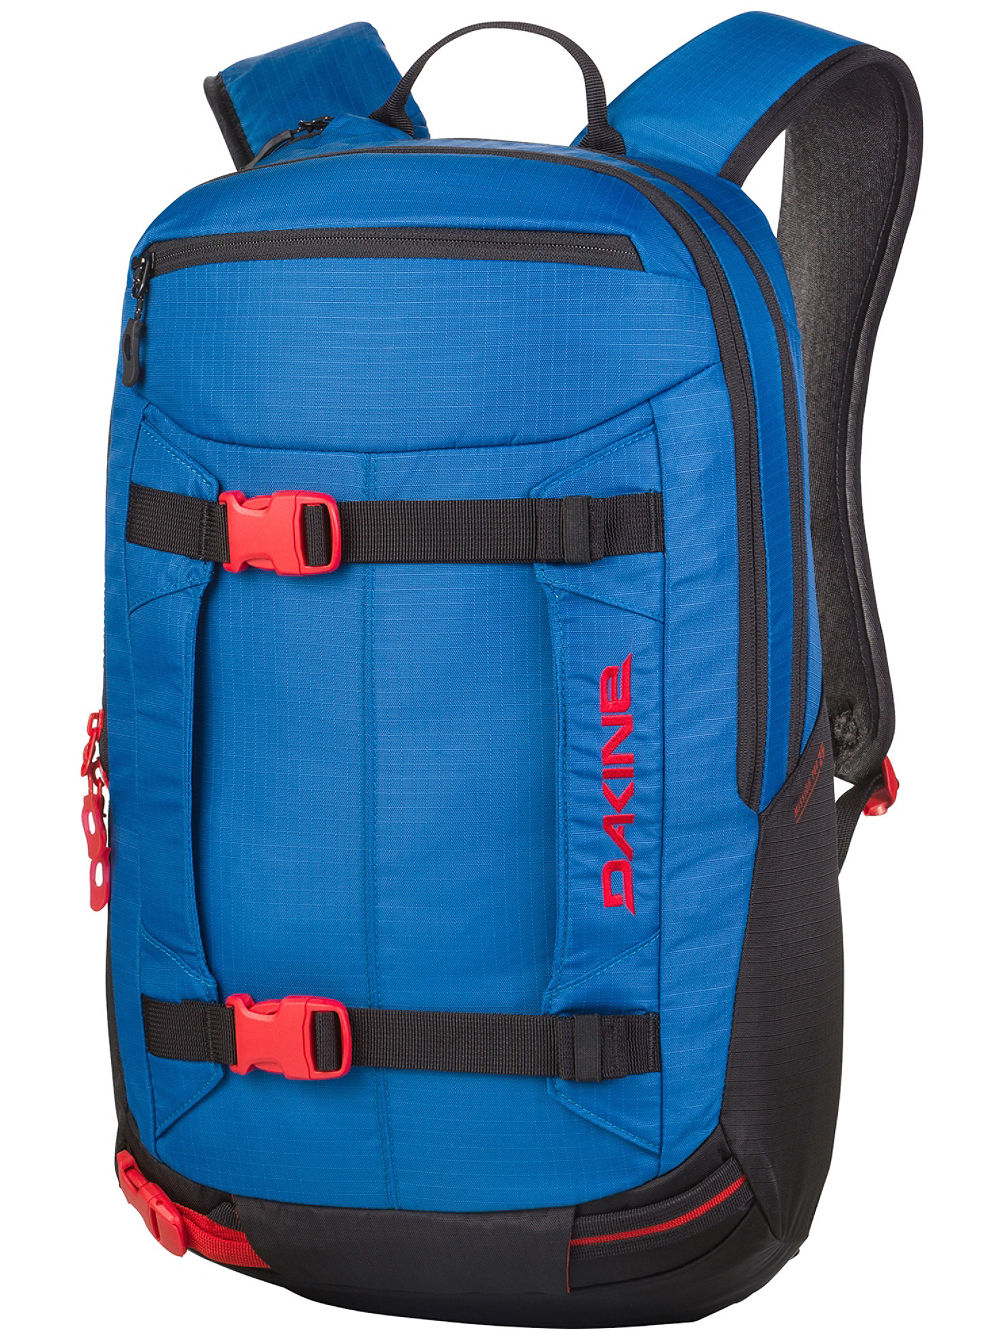 Mission Pro 25L Backpack